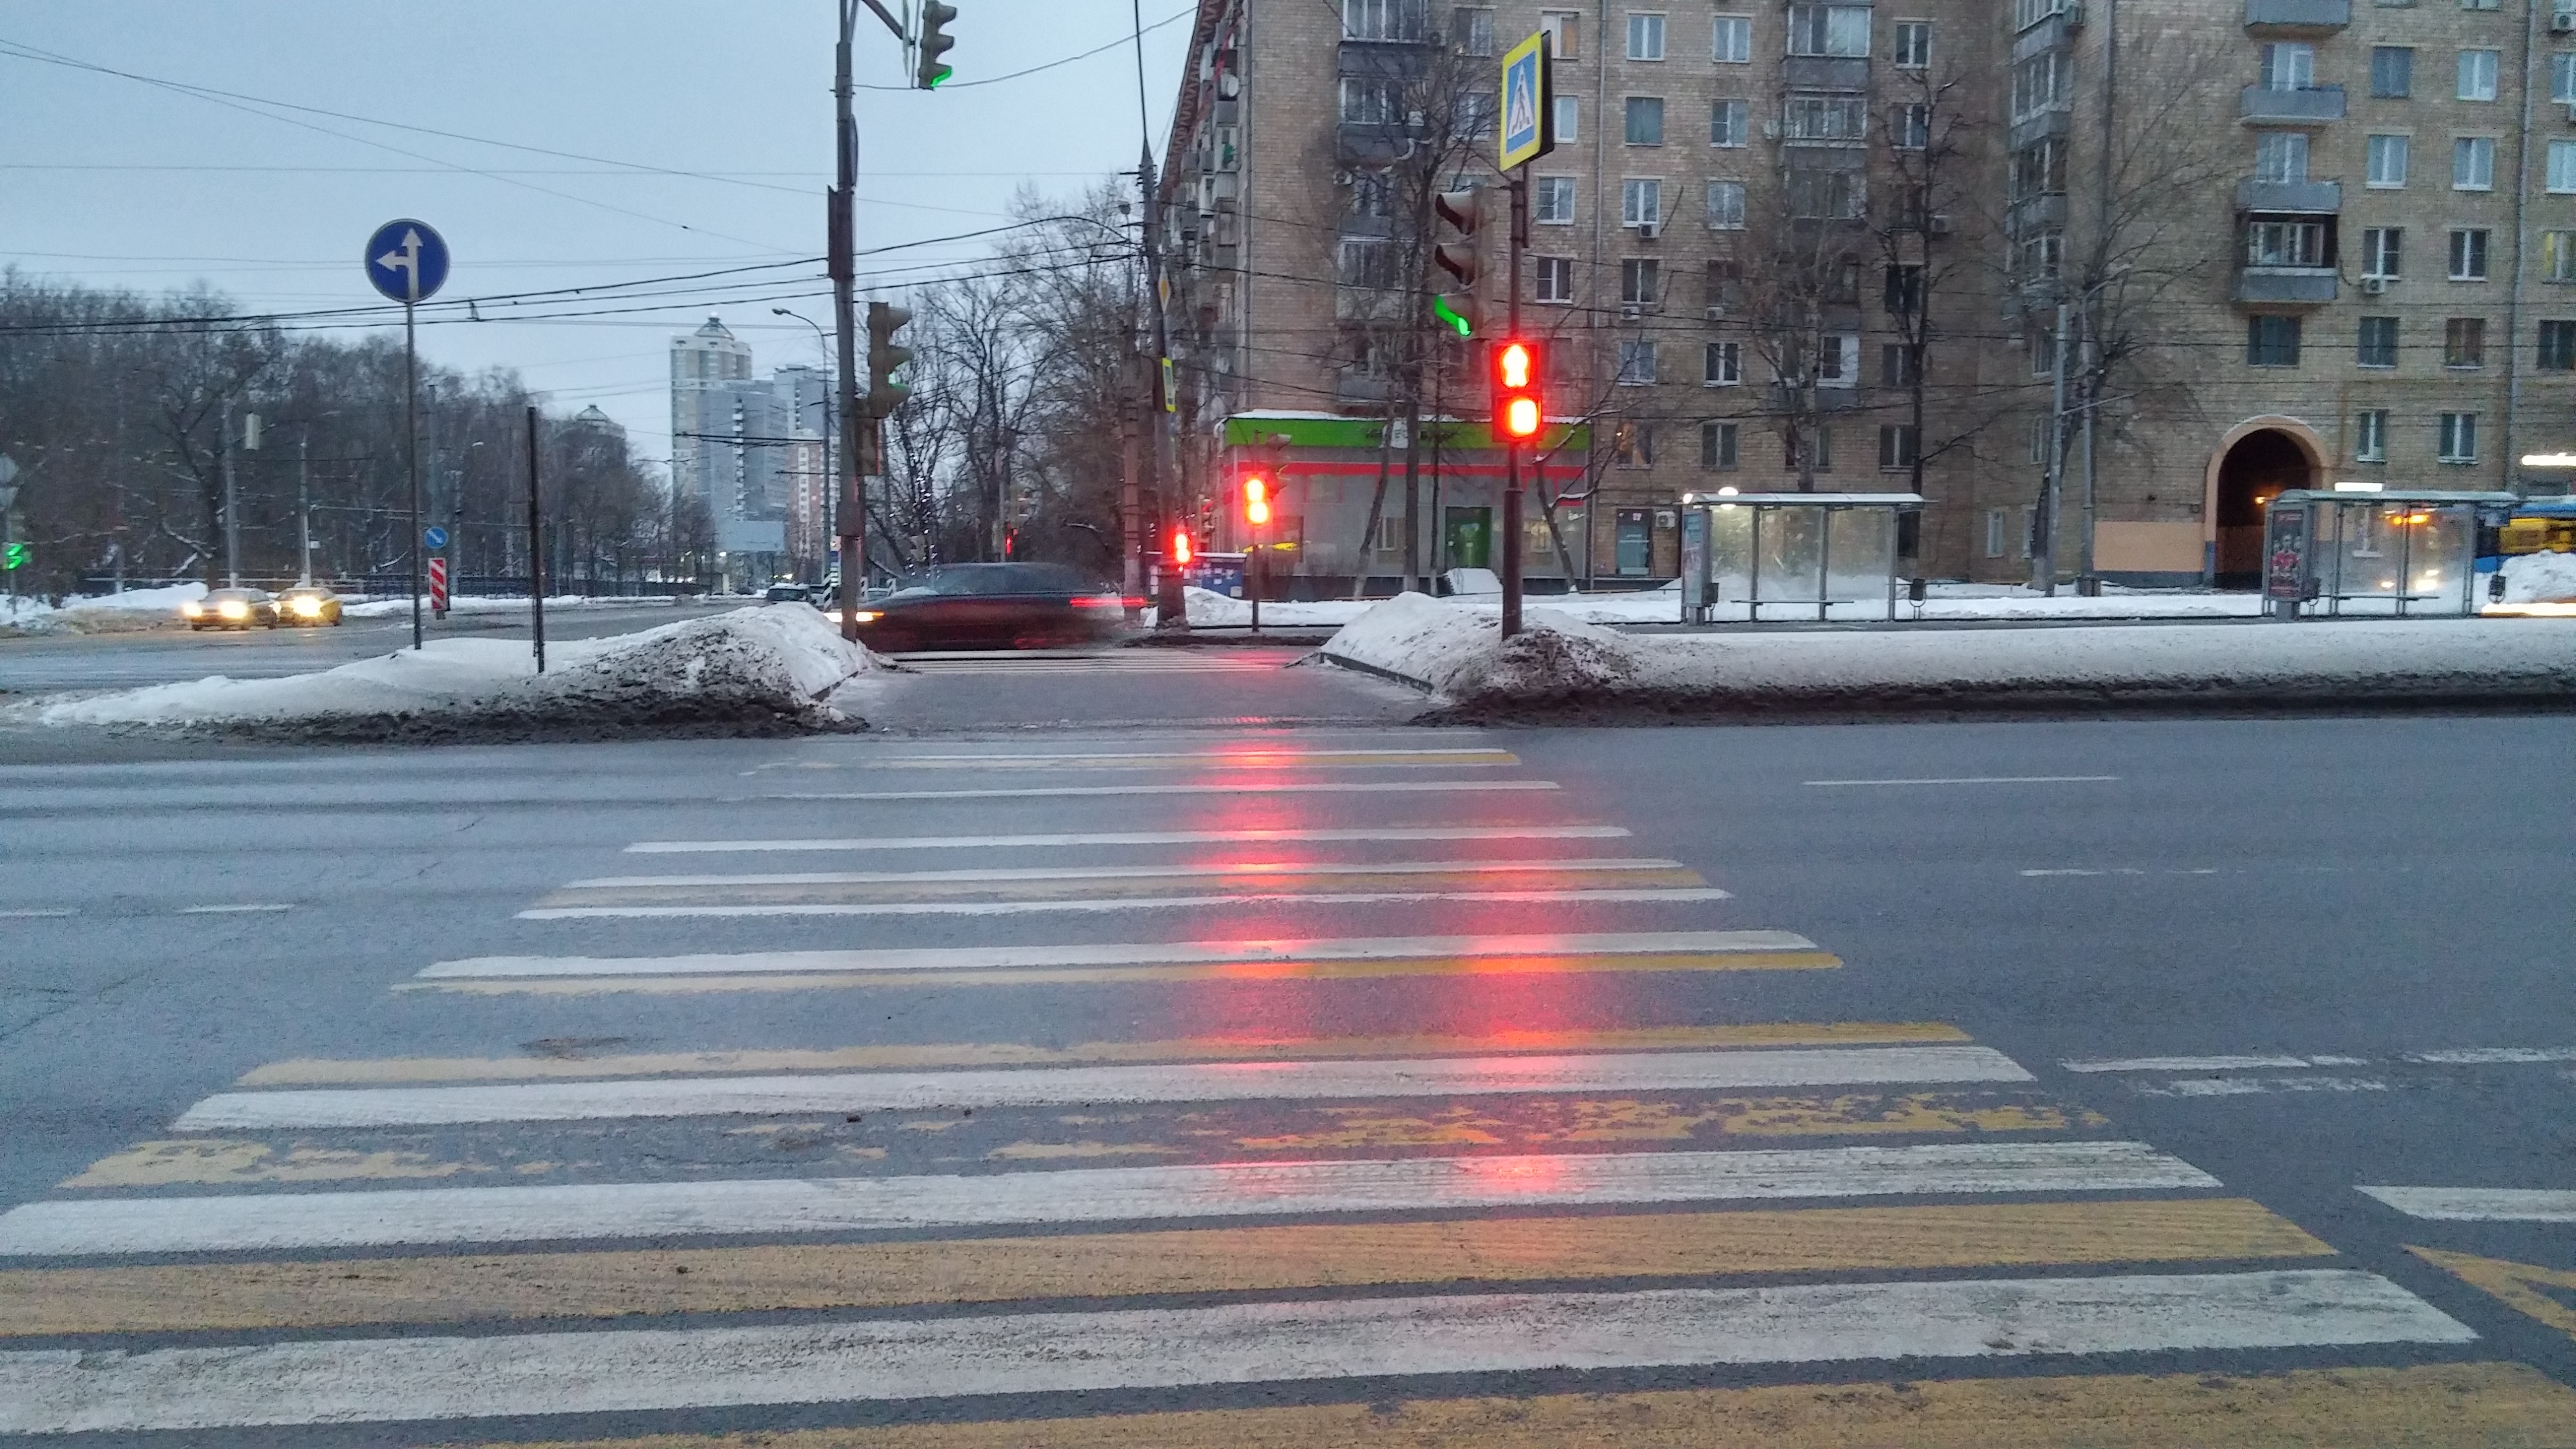 Переход на красный пешеход. Перекресток регулируемый светофором. Светофор на нерегулируемом пешеходном переходе. Нерегулируемый пешеходный перекресток. Регулируемый пешеходный переход.